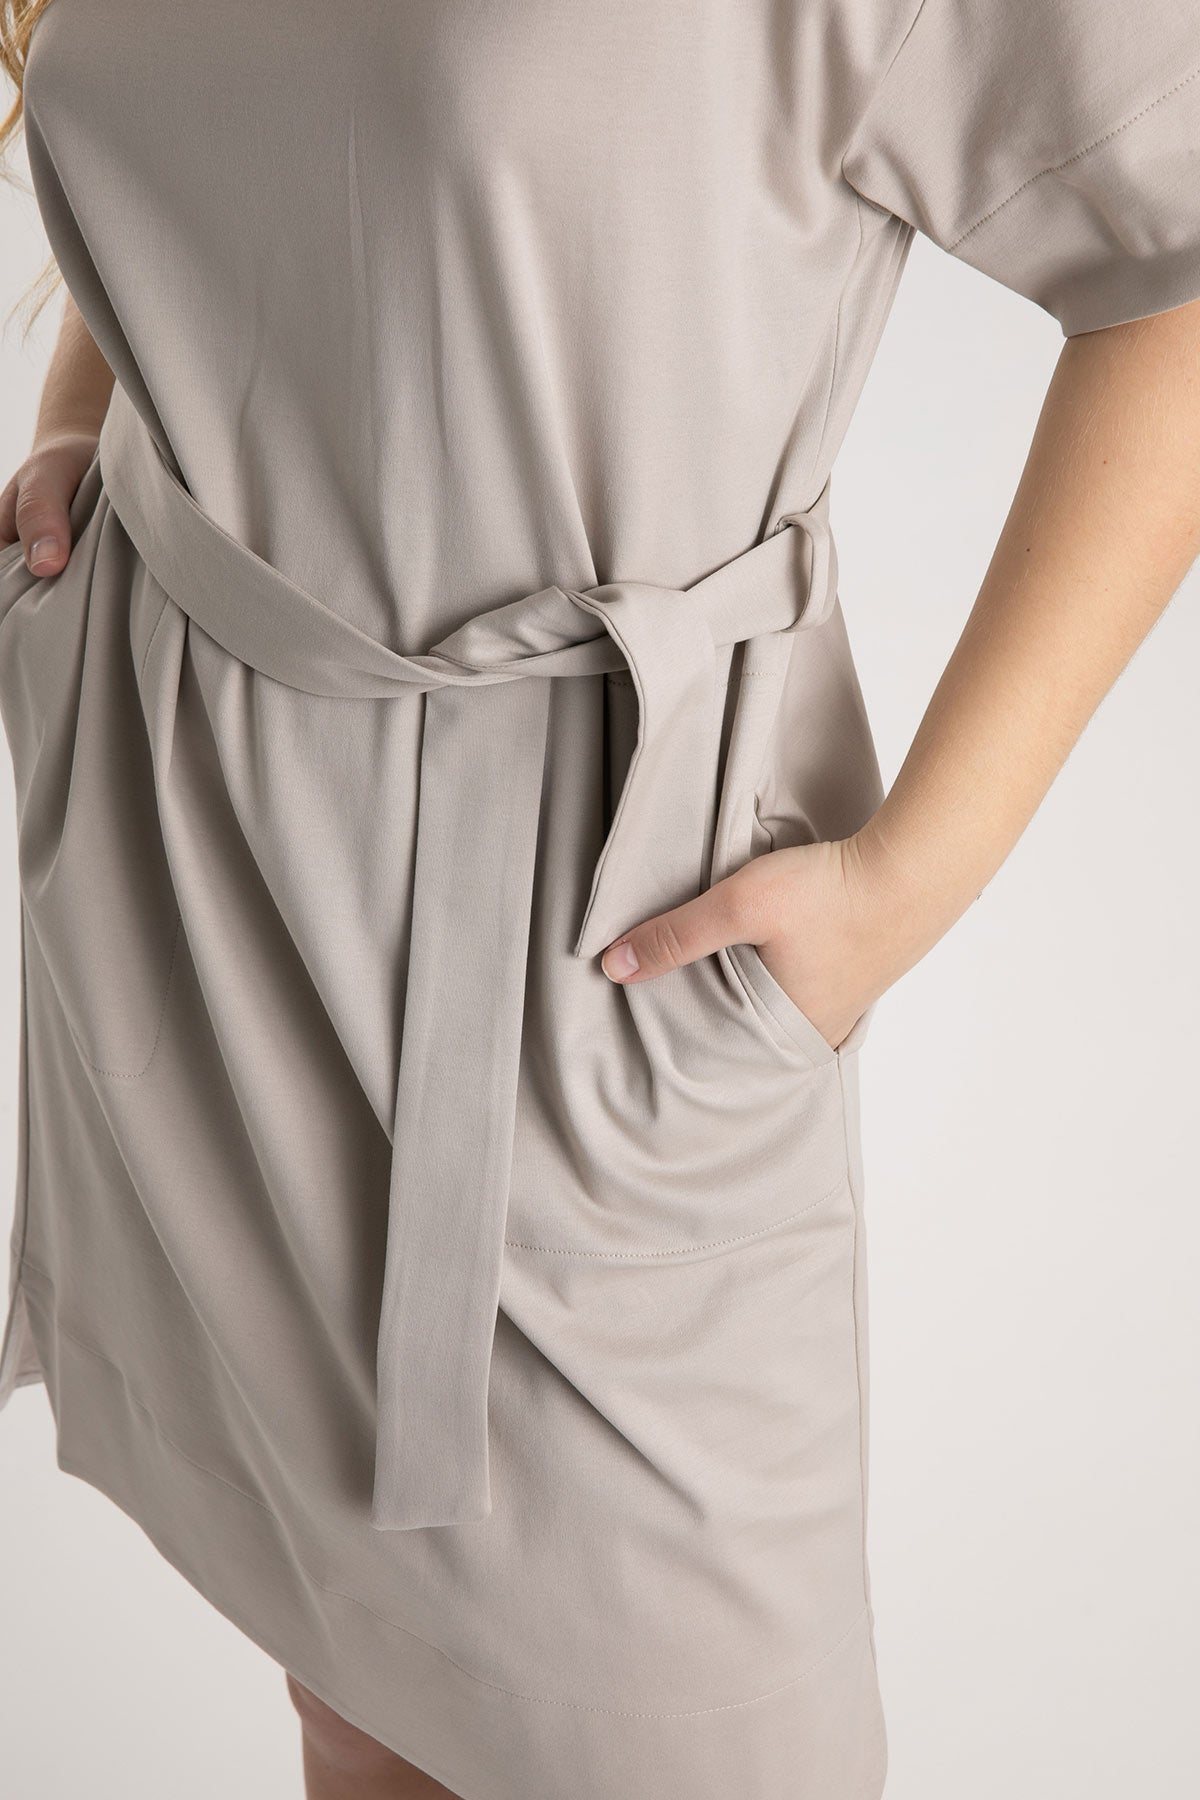 Tonet Belden Kuşaklı Kısa Kollu Diz Üstü Elbise-Libas Trendy Fashion Store